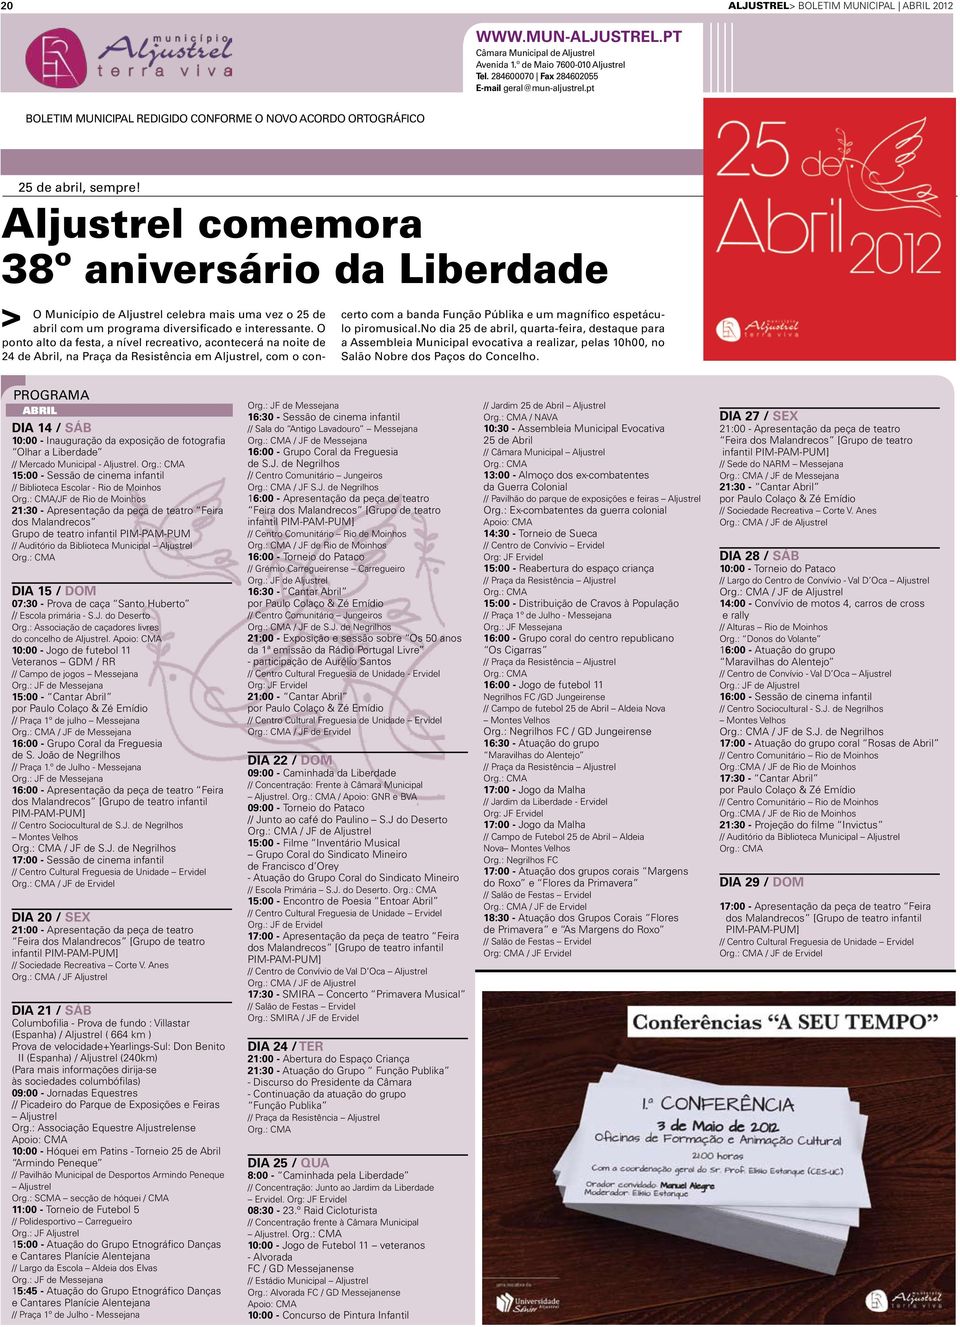 Aljustrel comemora 38º aniversário da Liberdade O Município de Aljustrel celebra mais uma vez o 25 de abril com um programa diversificado e interessante.